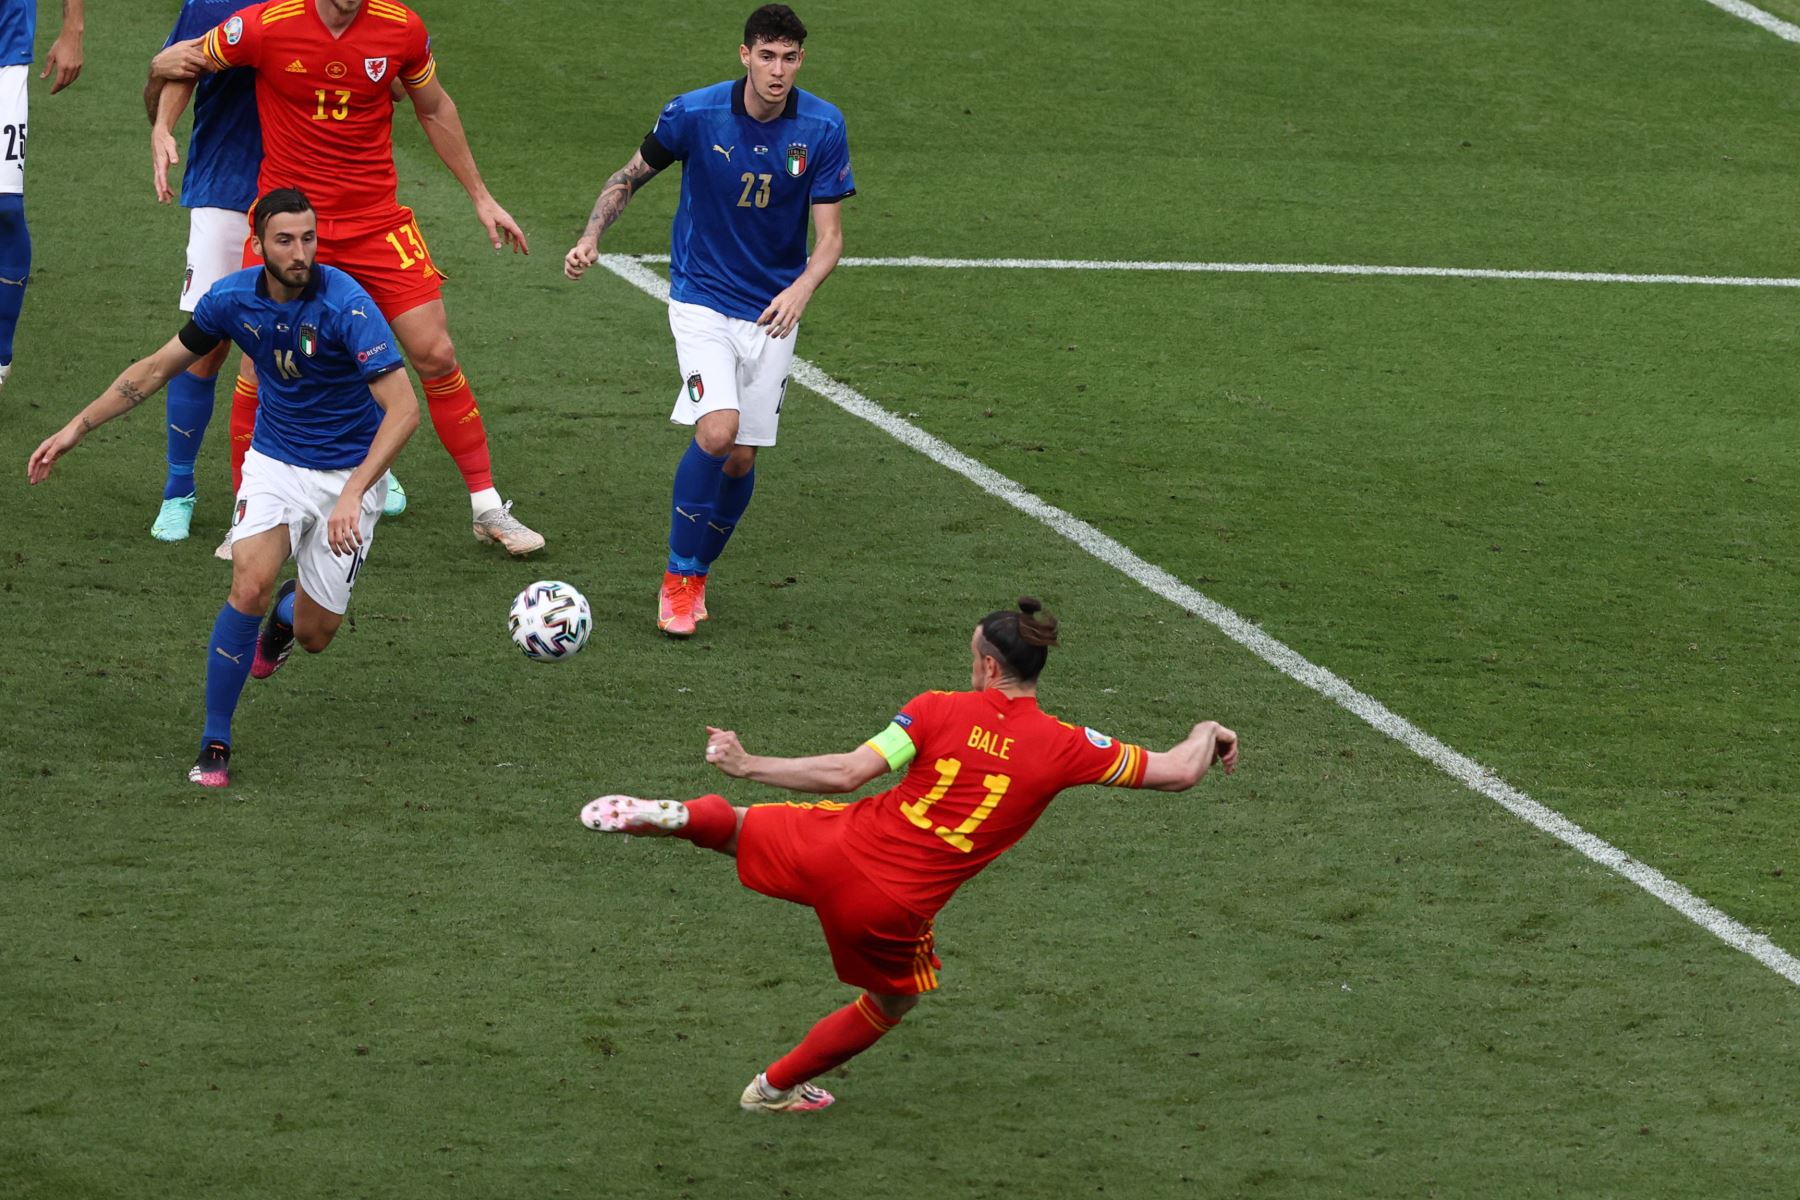 El delantero de Gales Gareth Bale volea el balón sobre la barra durante el partido de fútbol del Grupo A de la UEFA EURO 2020 entre Italia y Gales en el Estadio Olímpico de Roma. Foto: AFP